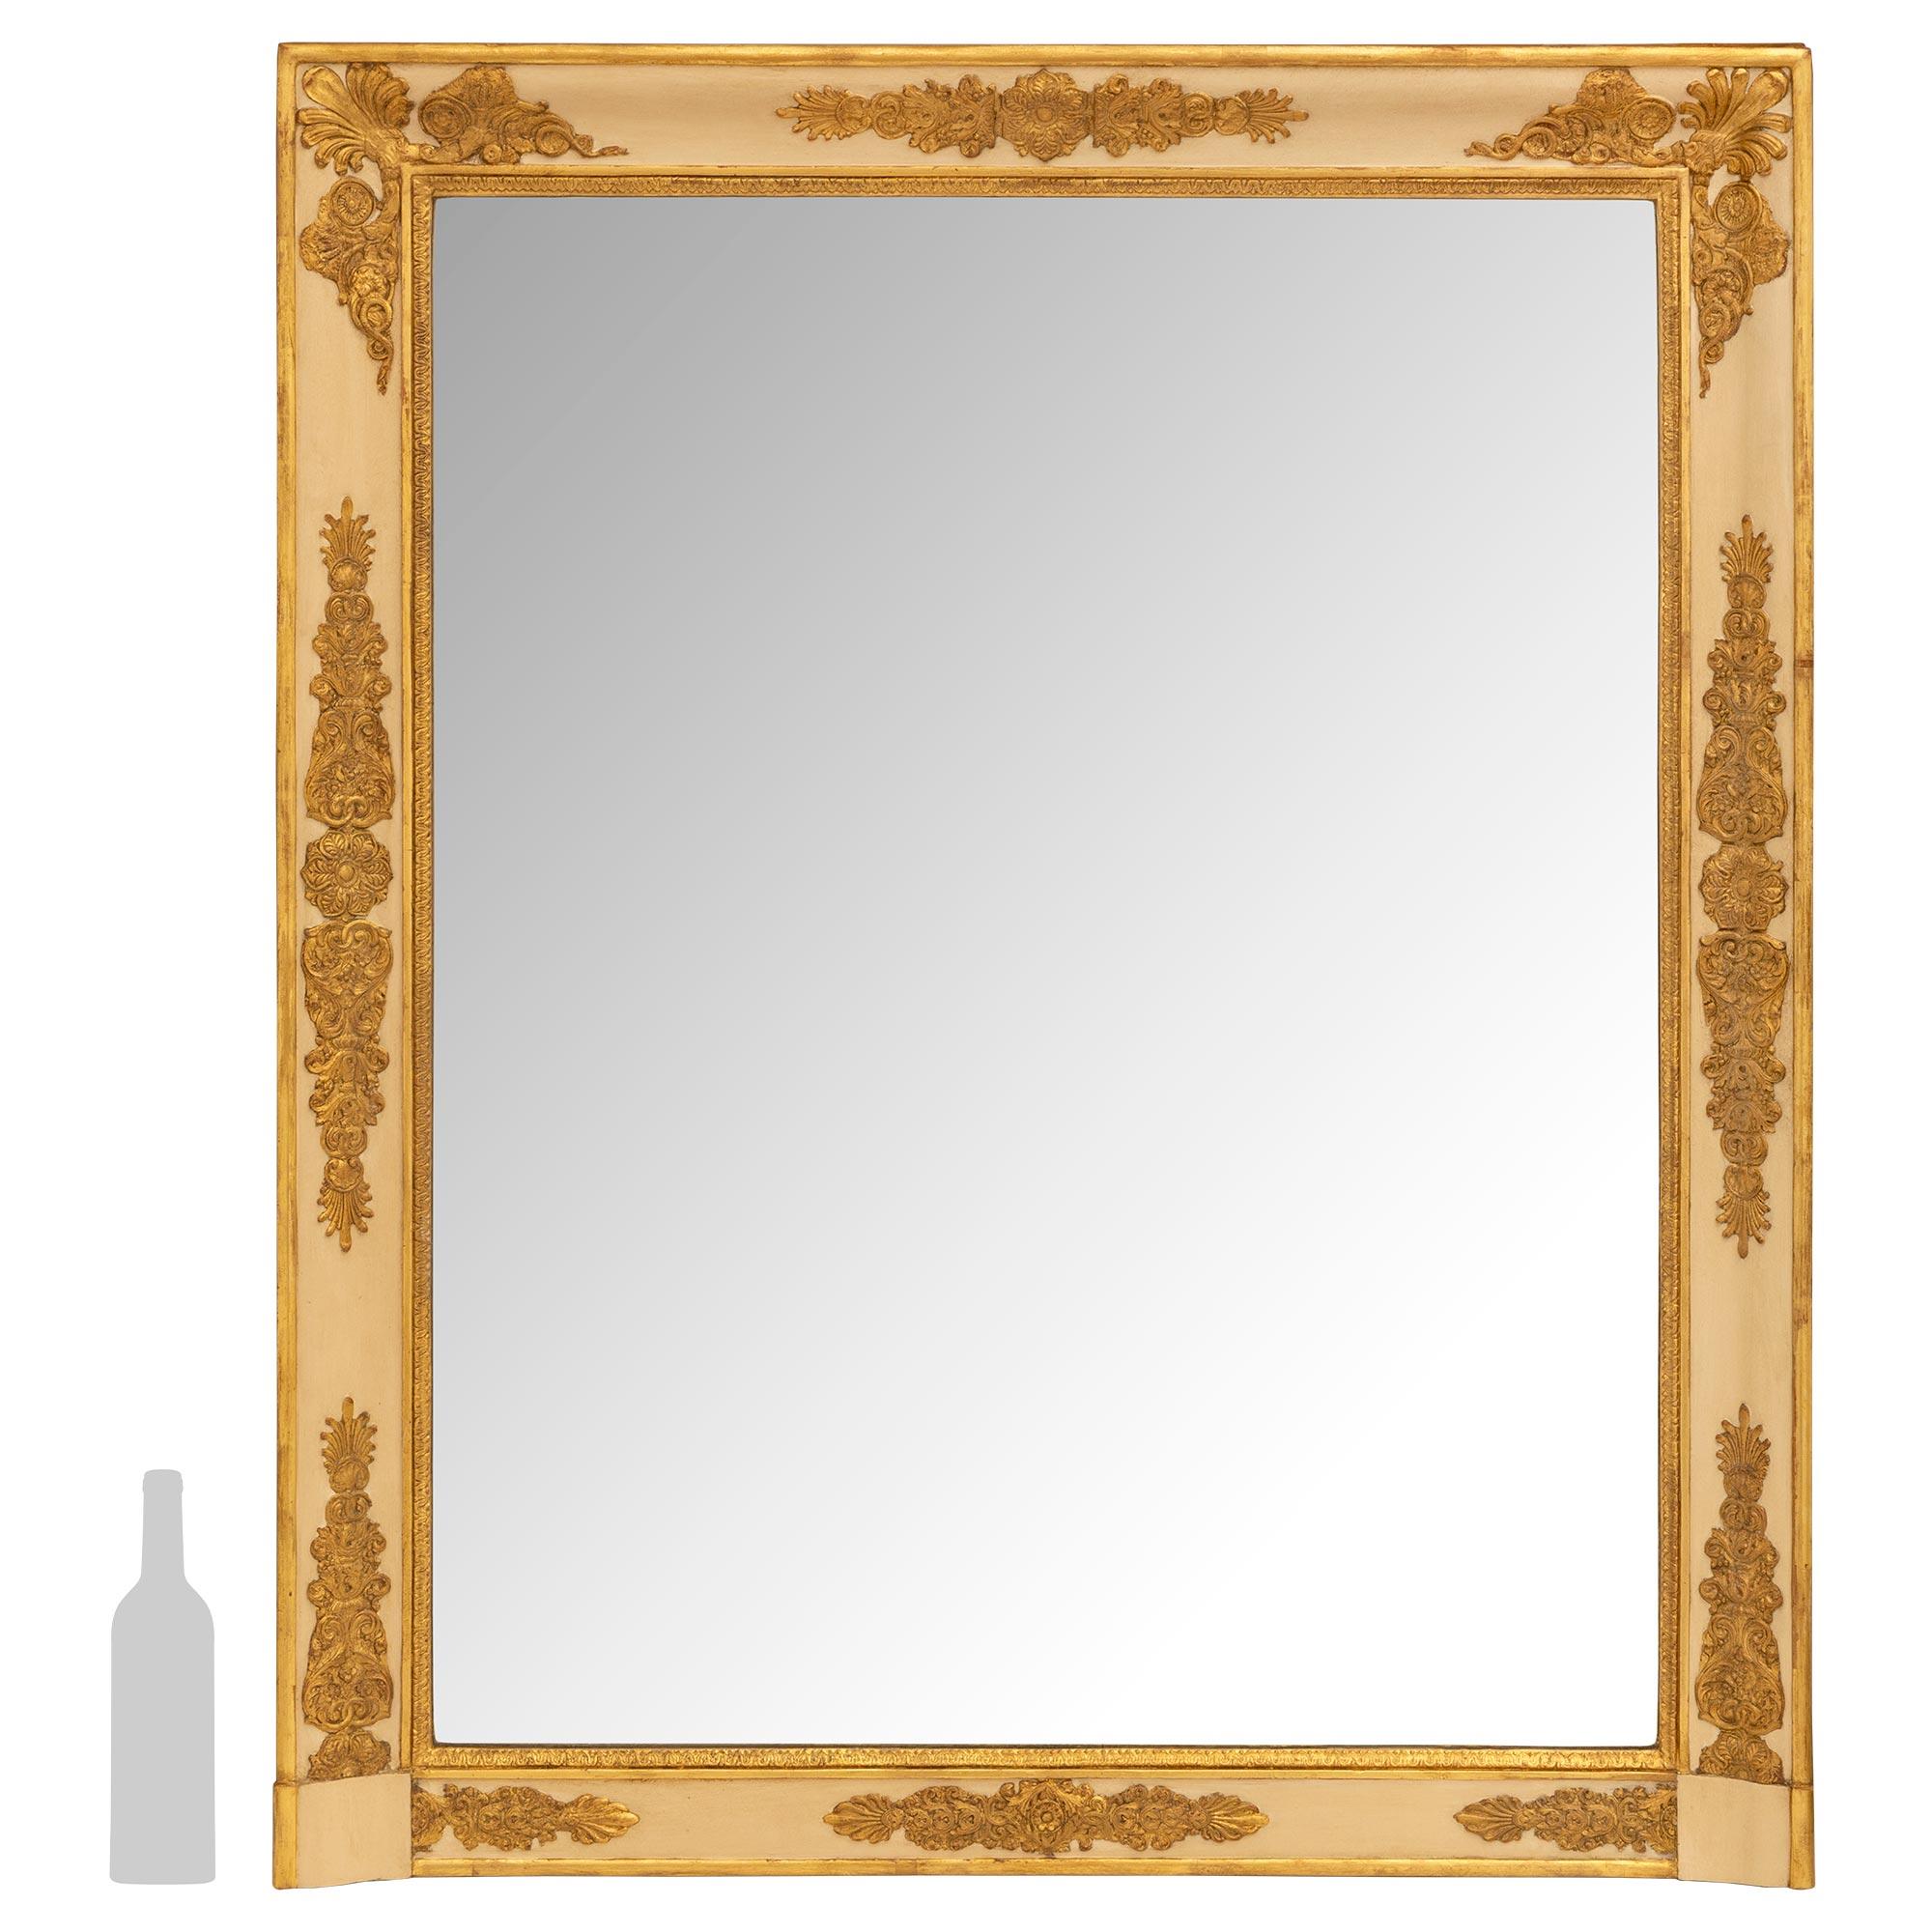 




Ein attraktives Paar französischer Empire-Spiegel aus dem frühen 19. Jahrhundert, patiniert und vergoldet. Die ursprünglichen Spiegel Platten sind in einem off weiß und vergoldeten Rahmen mit unteren Blöcke flankieren die untere Platte mit